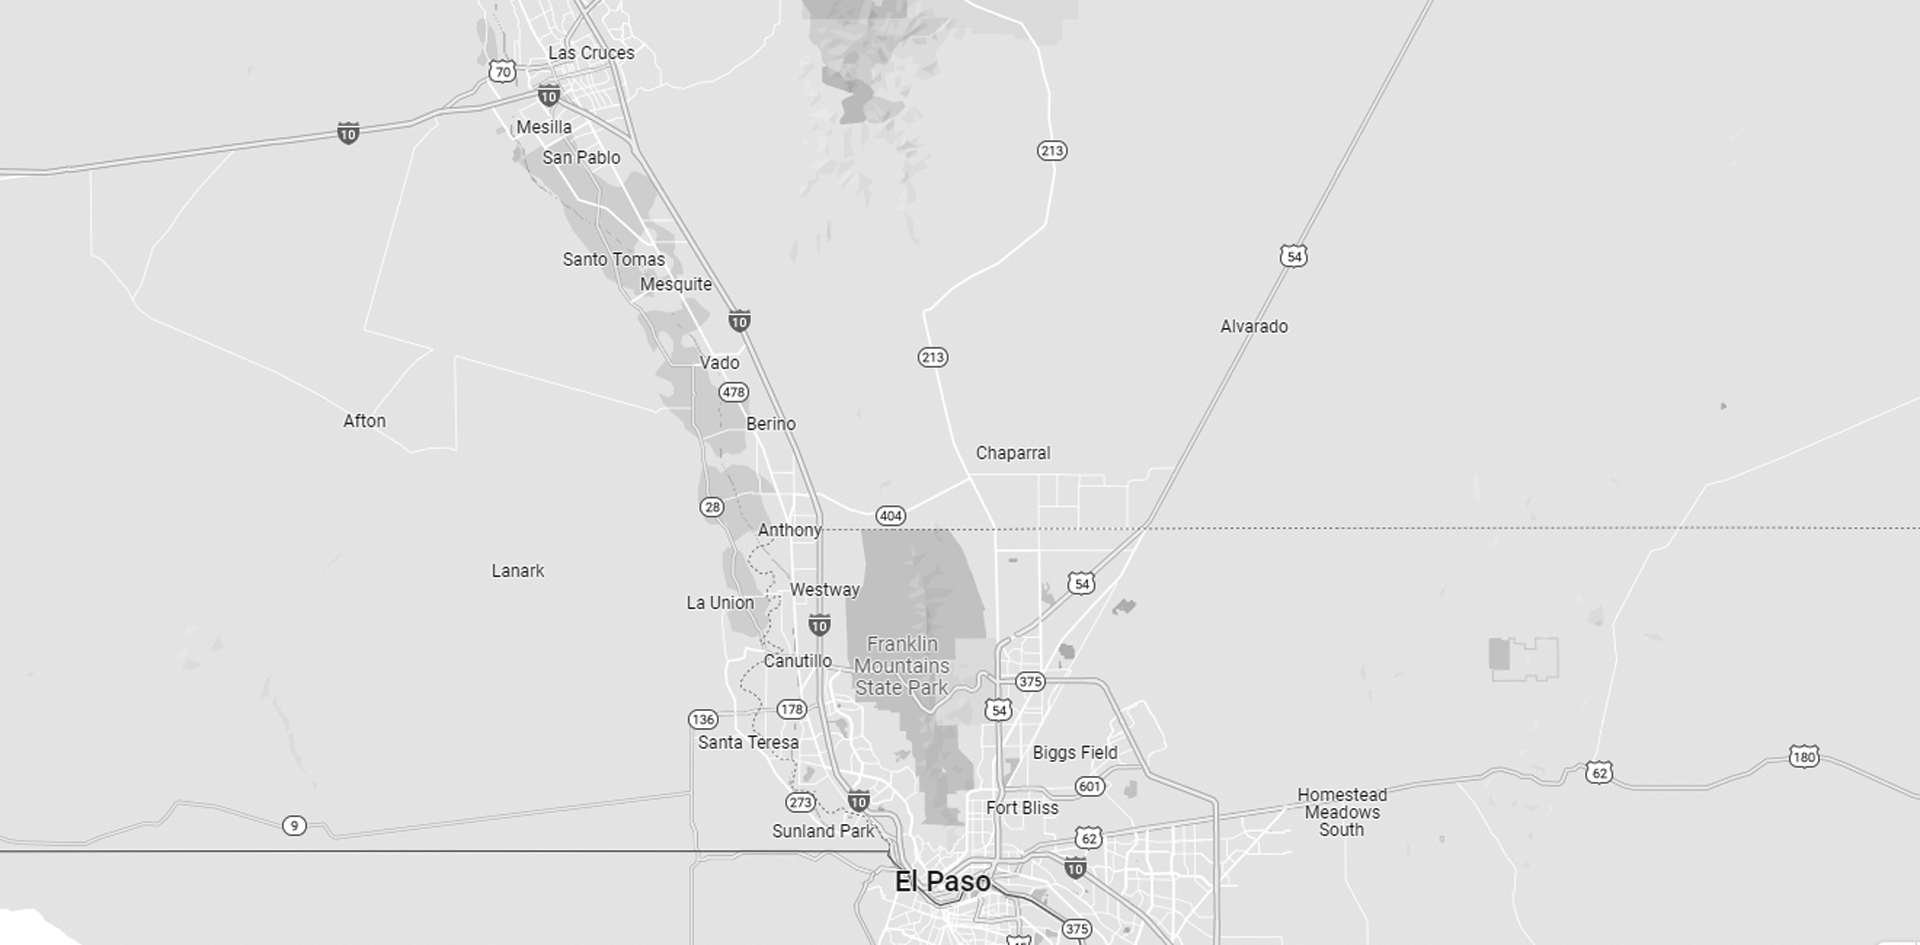 Las Cruces, NM and El Paso, TX area map.